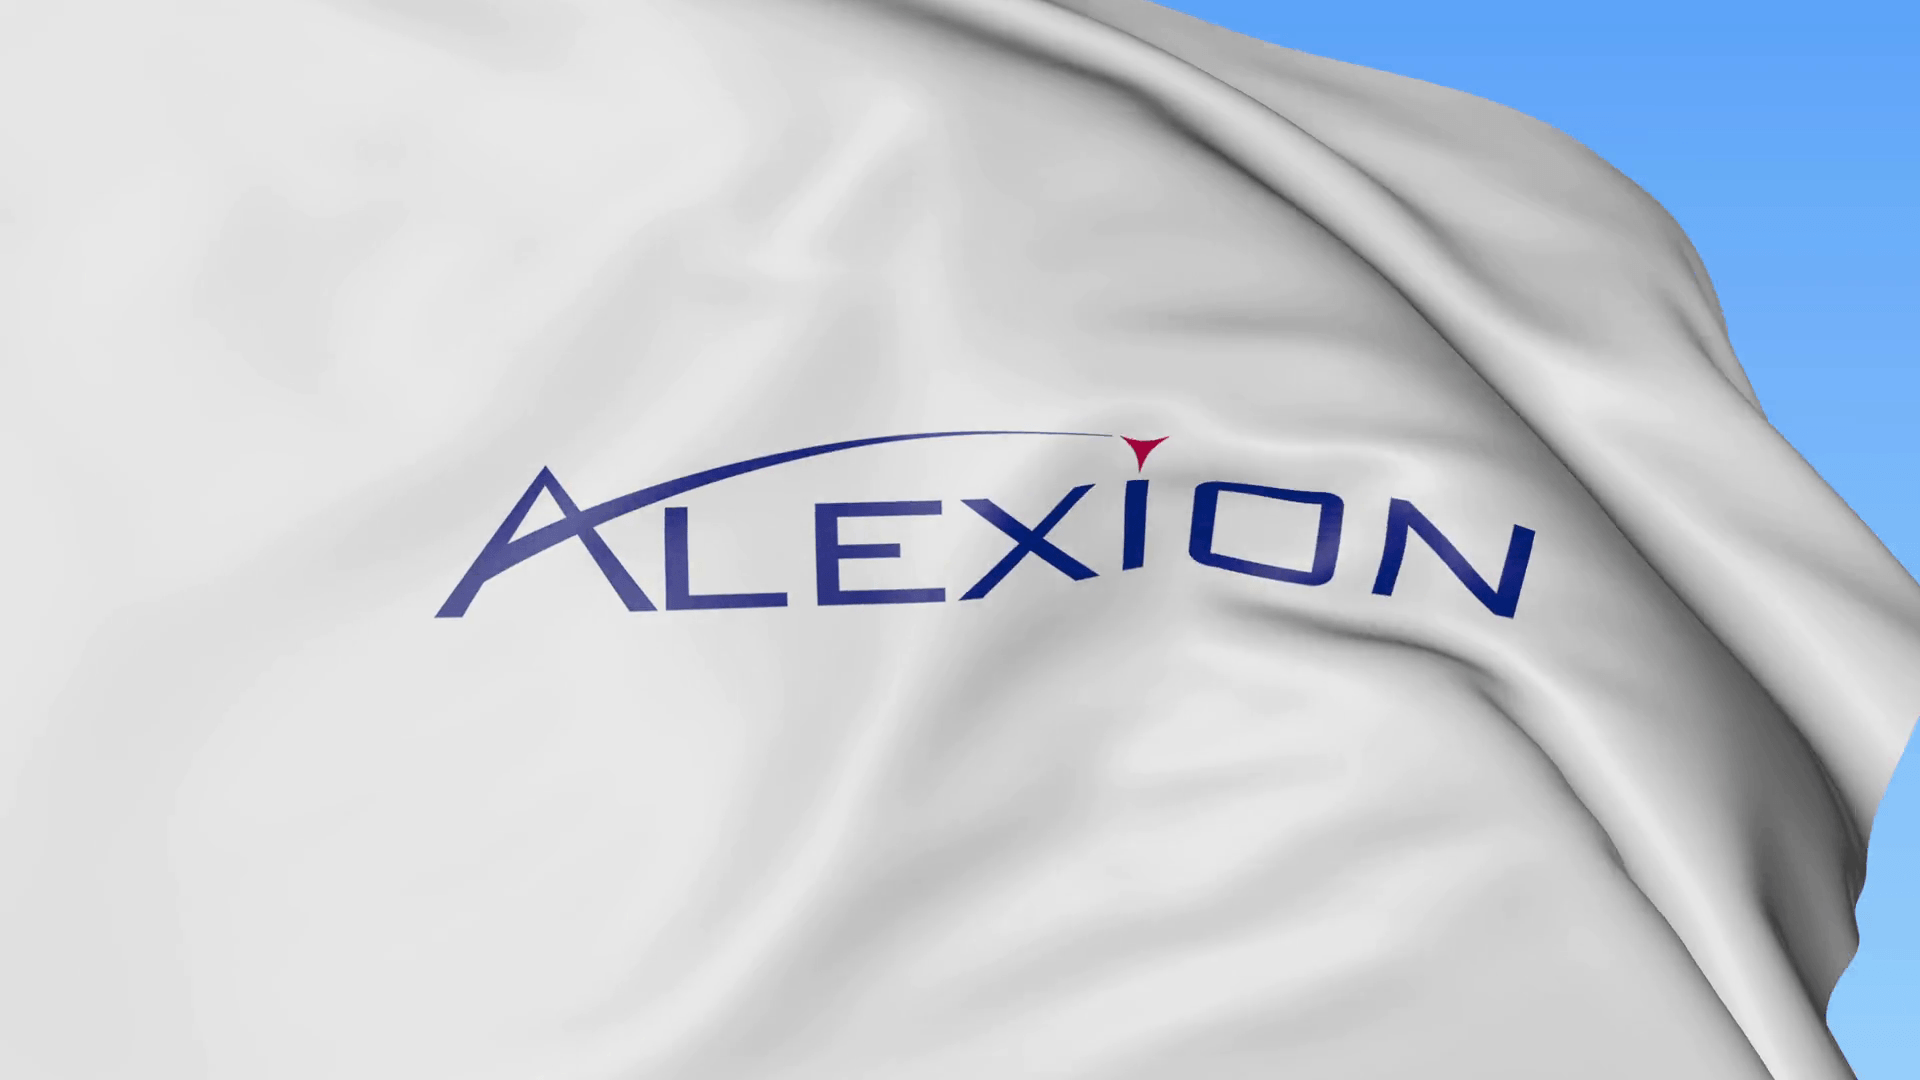 Alexion Logo - Alexion Pharmaceuticals (NASDAQ:ALXN) Stock Consolidating